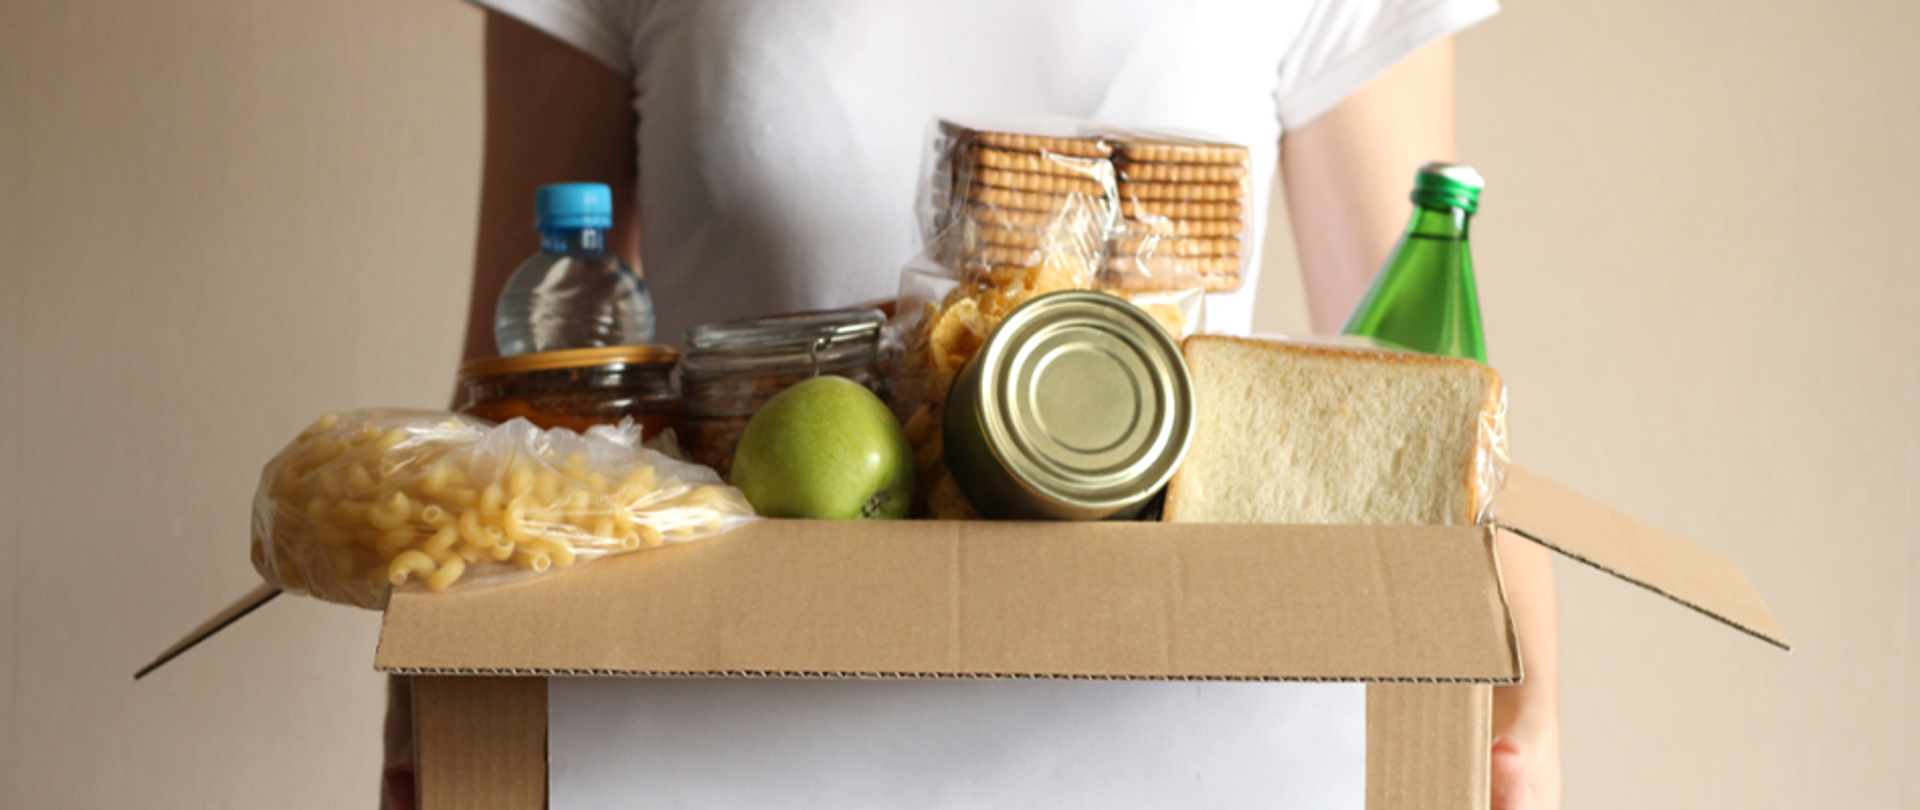 Na zdjęciu znajduje się kobieta, której twarzy nie widać trzymająca karton z różnymi produktami żywnościowymi 